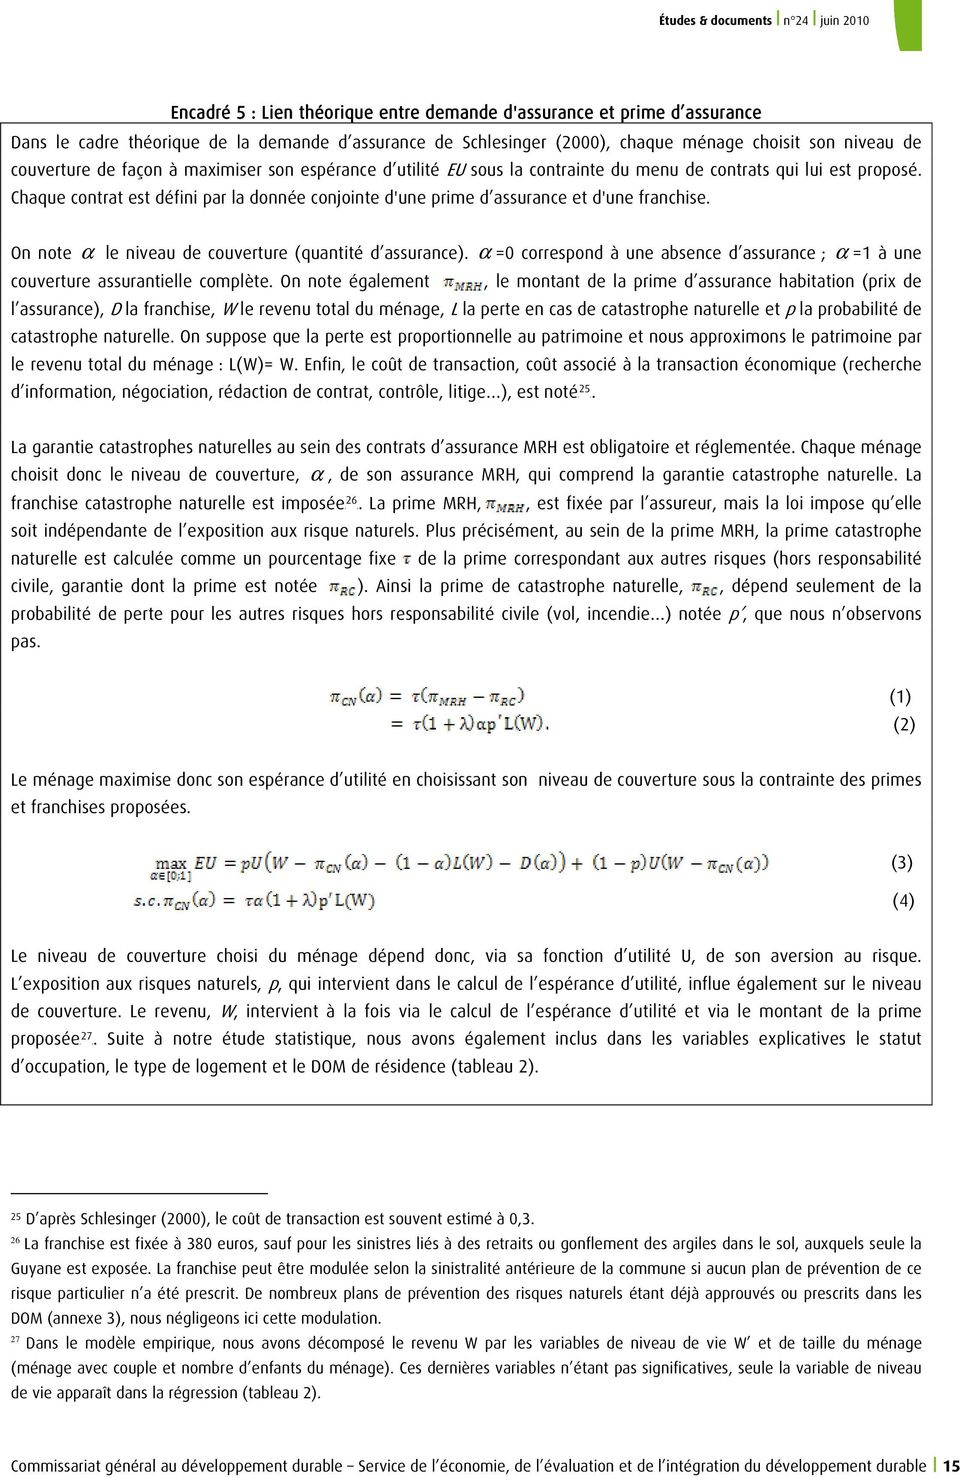 On note α le niveau de couvetue (quantité d assuance). α =0 coespond à une absence d assuance ; α =1 à une couvetue assuantielle complète.